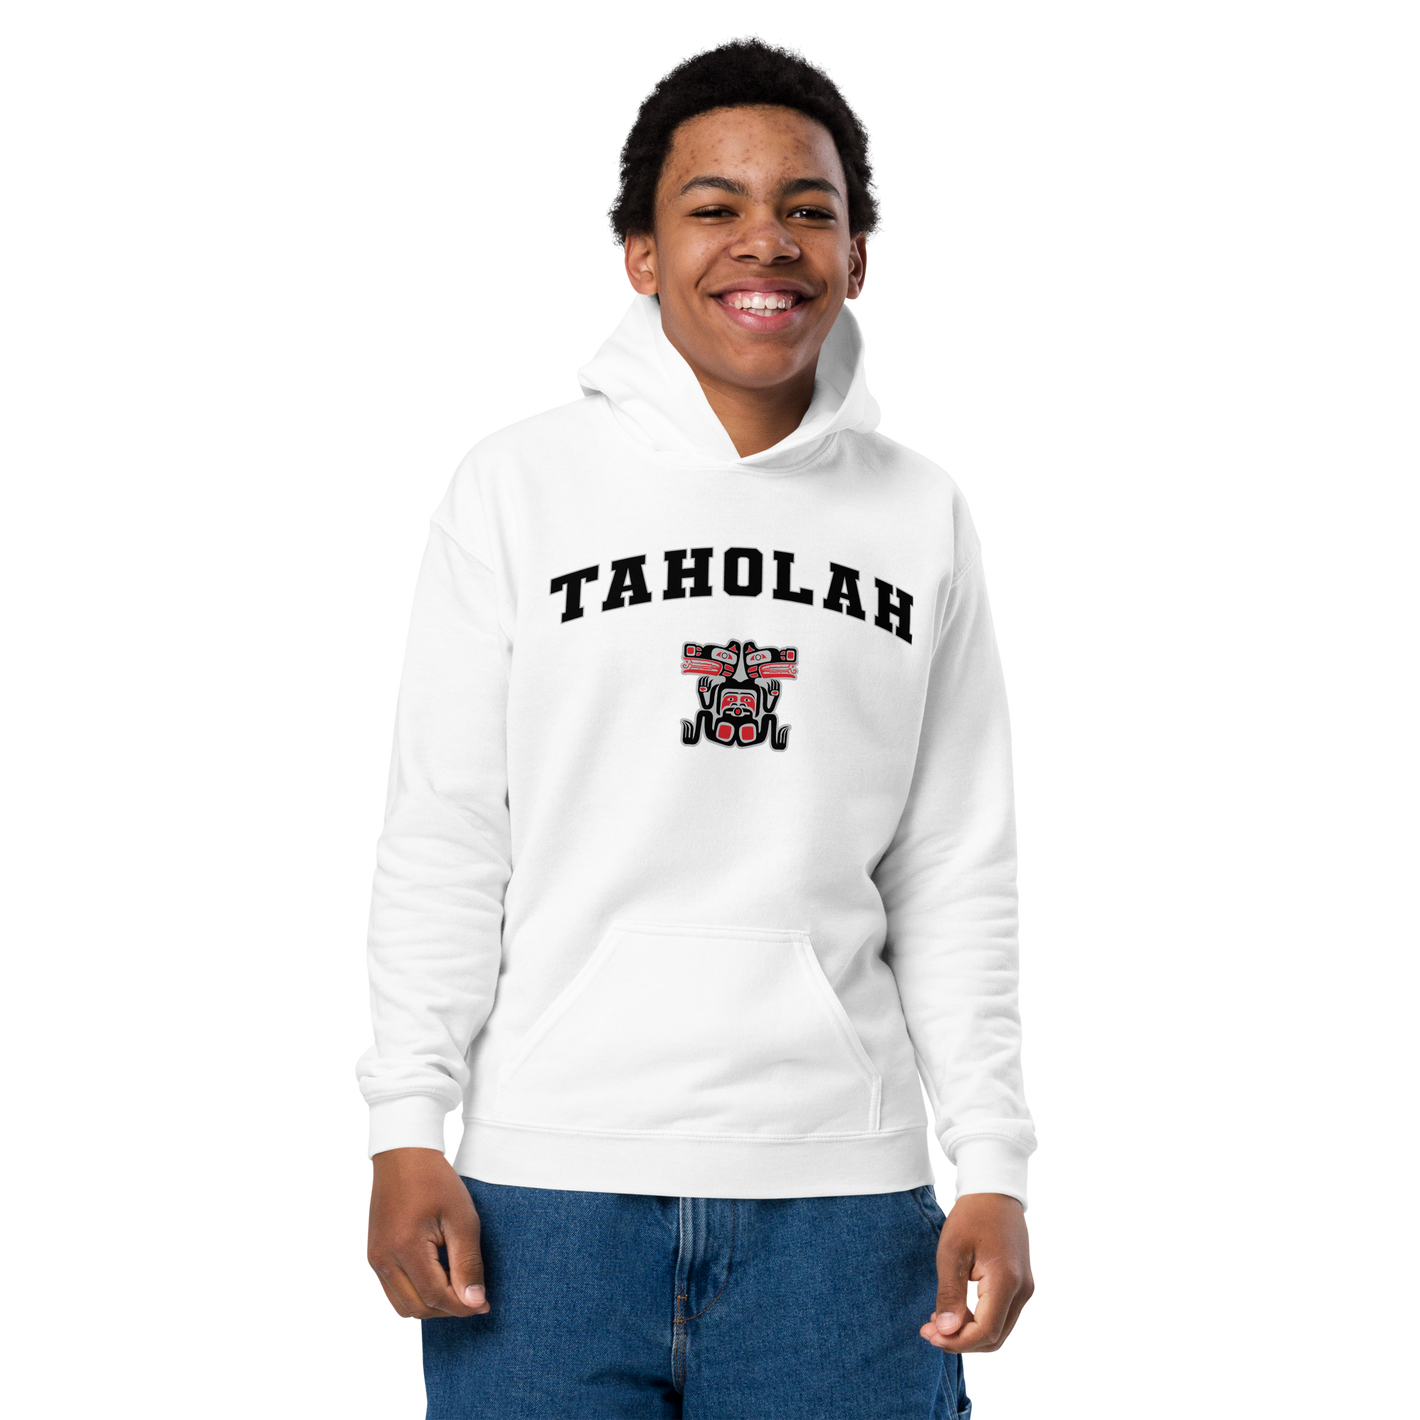 Taholah Youth heavy blend hoodie